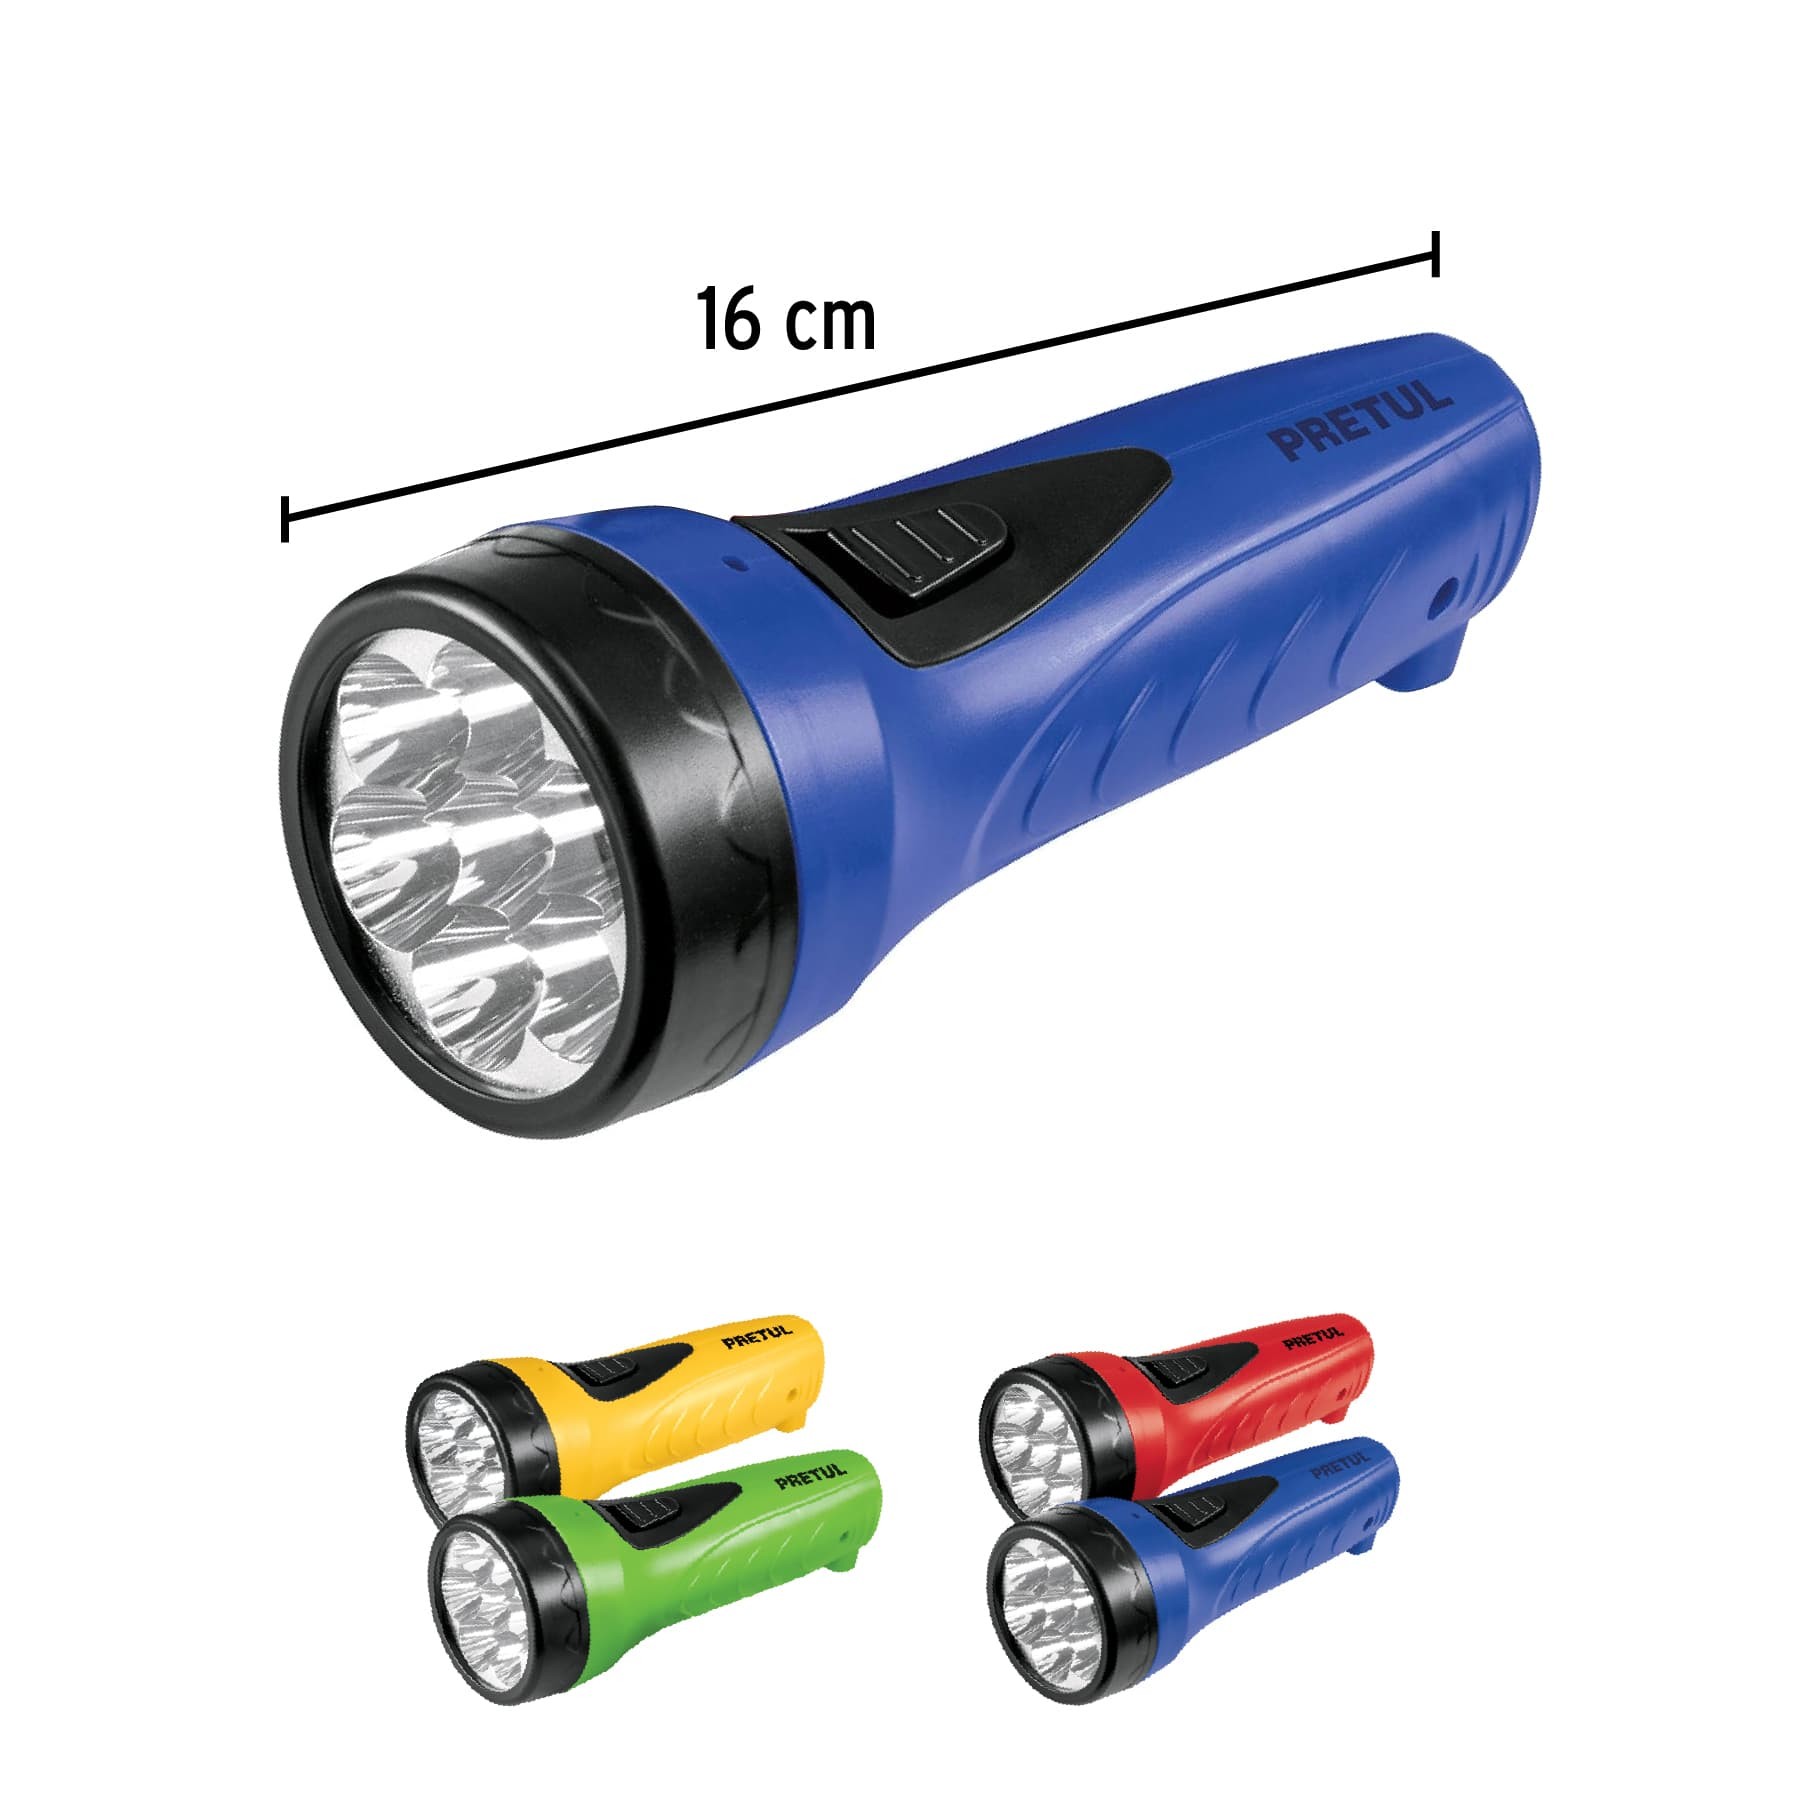 Juego de 2 Lamparas Linternas de Taller LED recargable USB 2 modos de luz